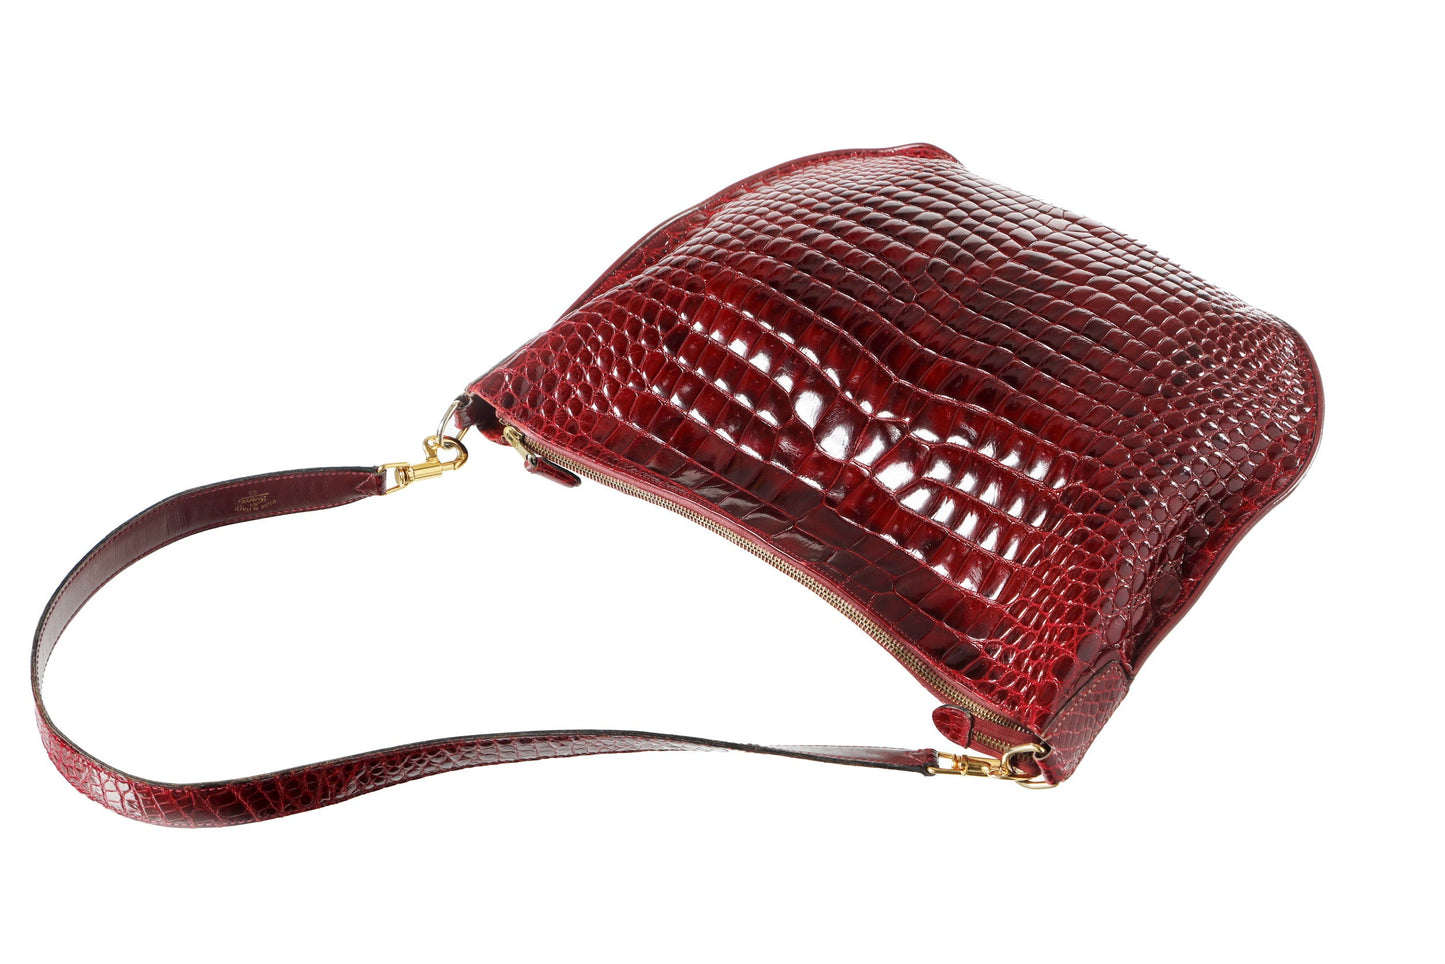 Gucci "Charlotte" bag in burgundy crocodile